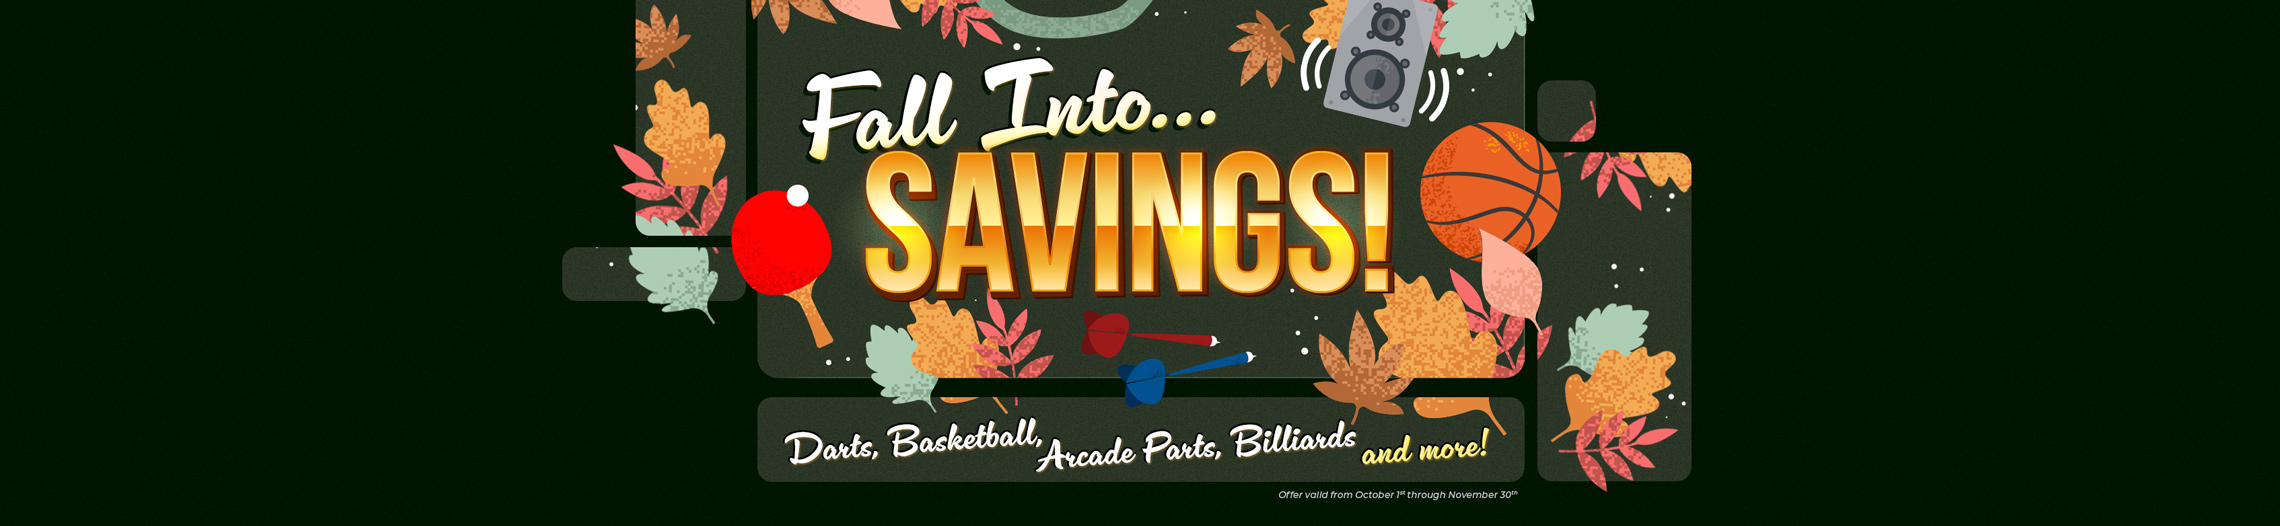 Fall into... Savings!